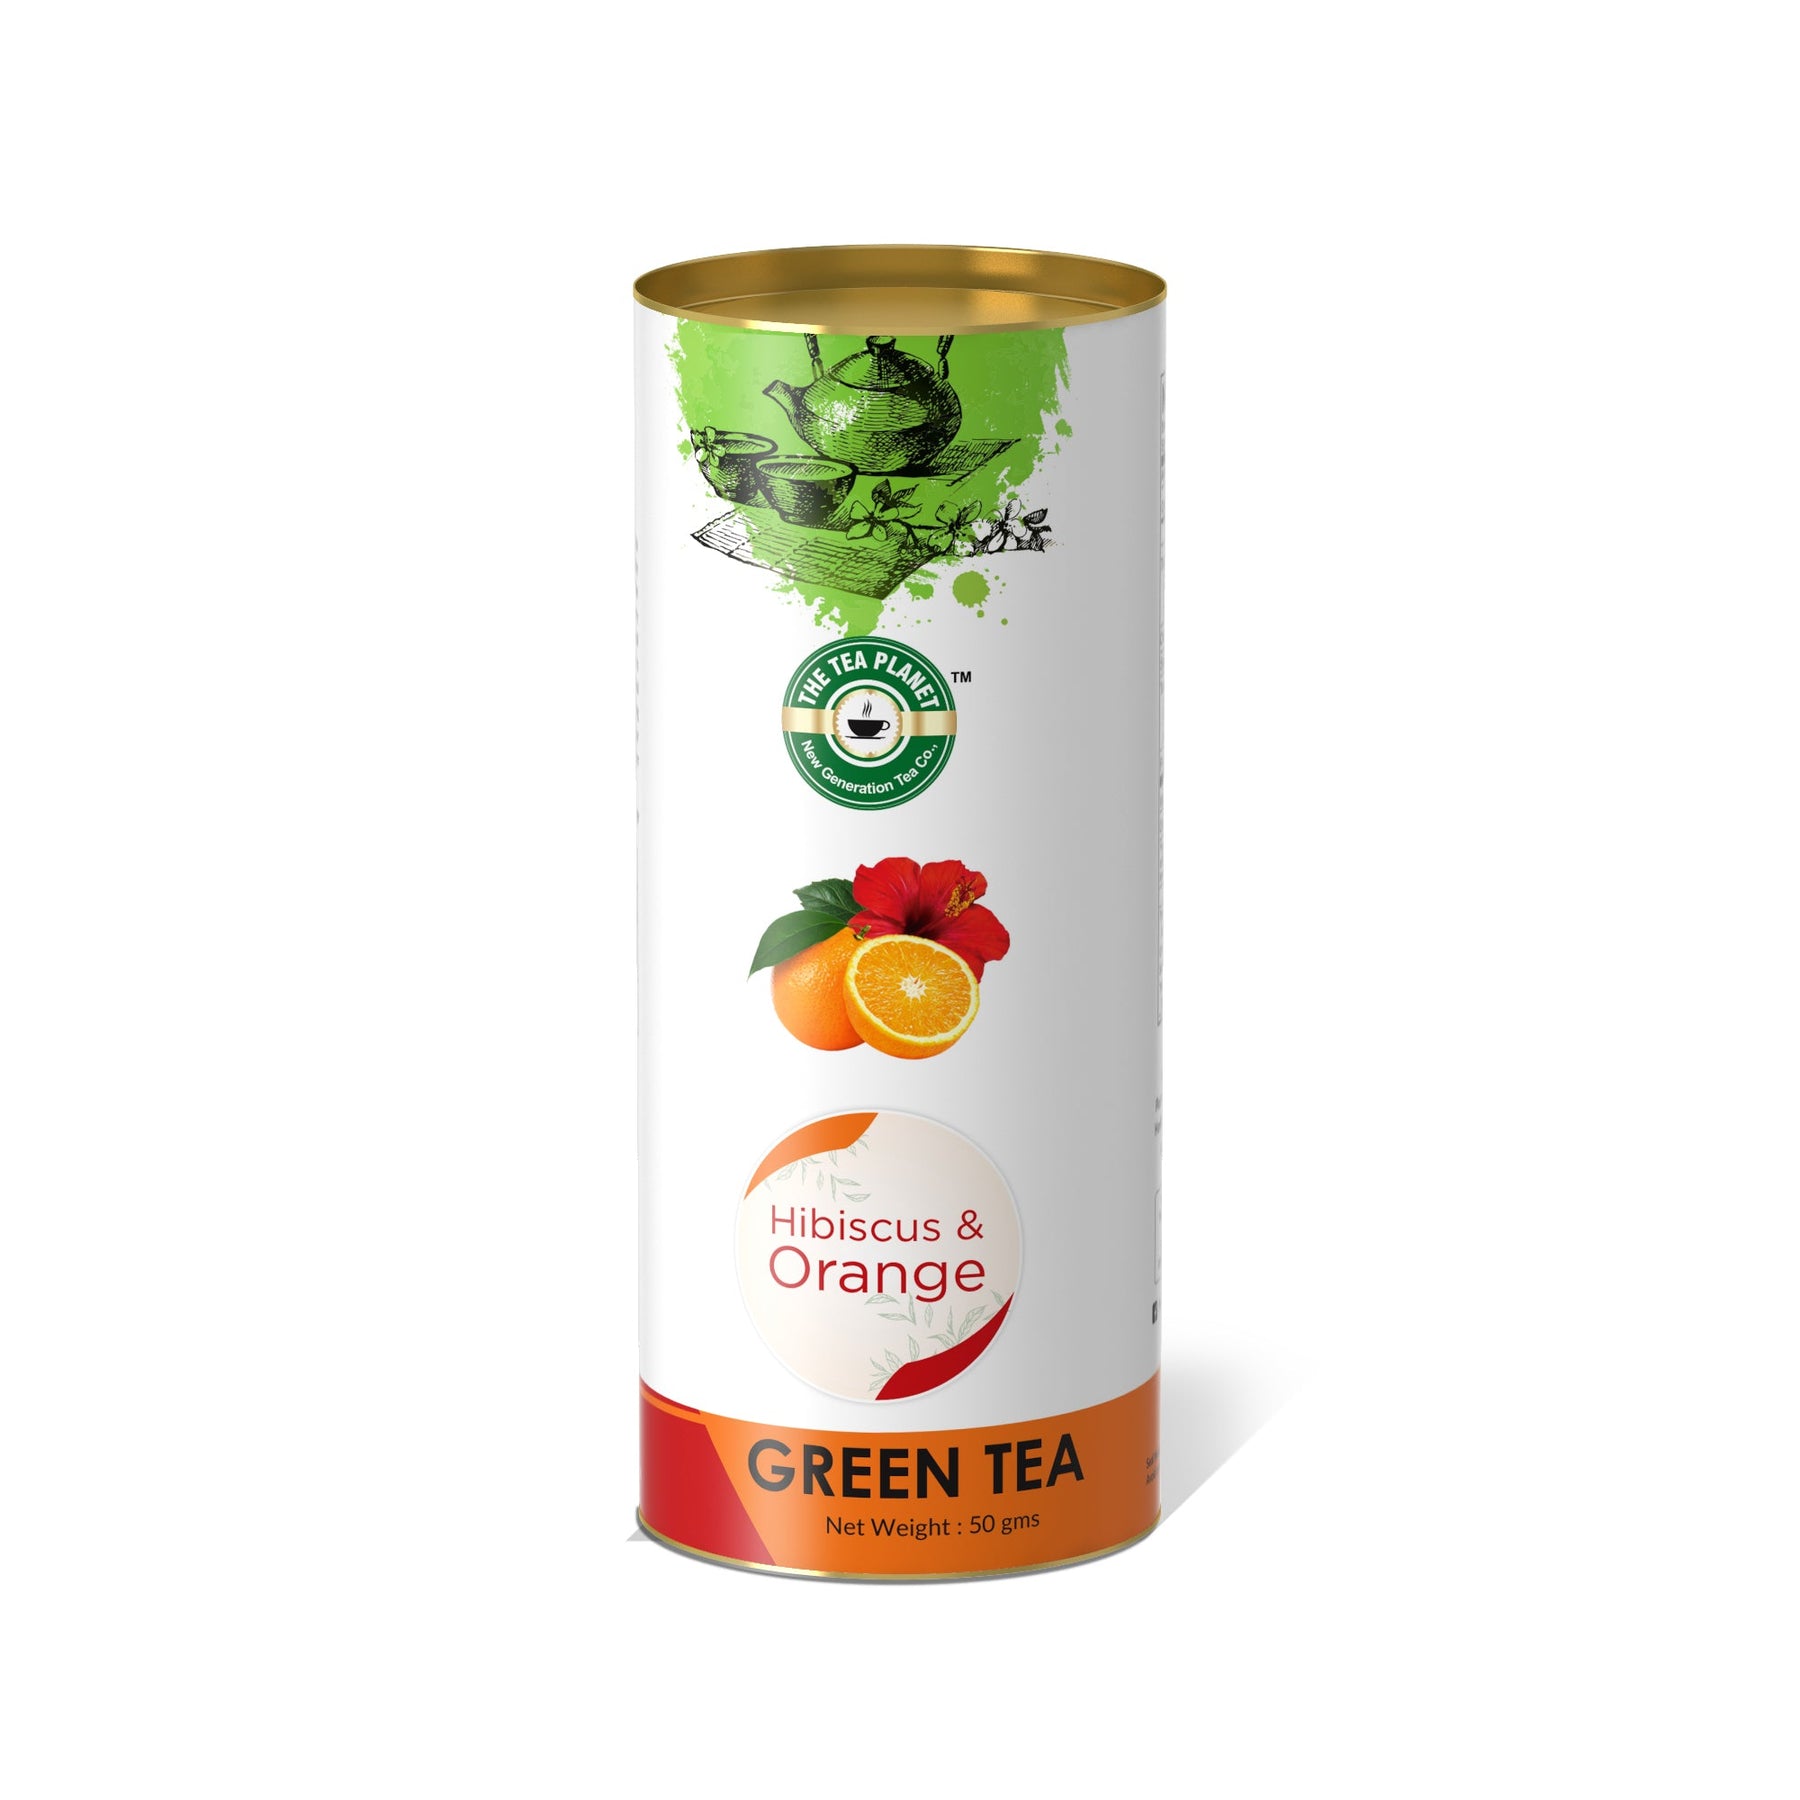 Hibiscus & Orange Orthodox Tea - 50 gms